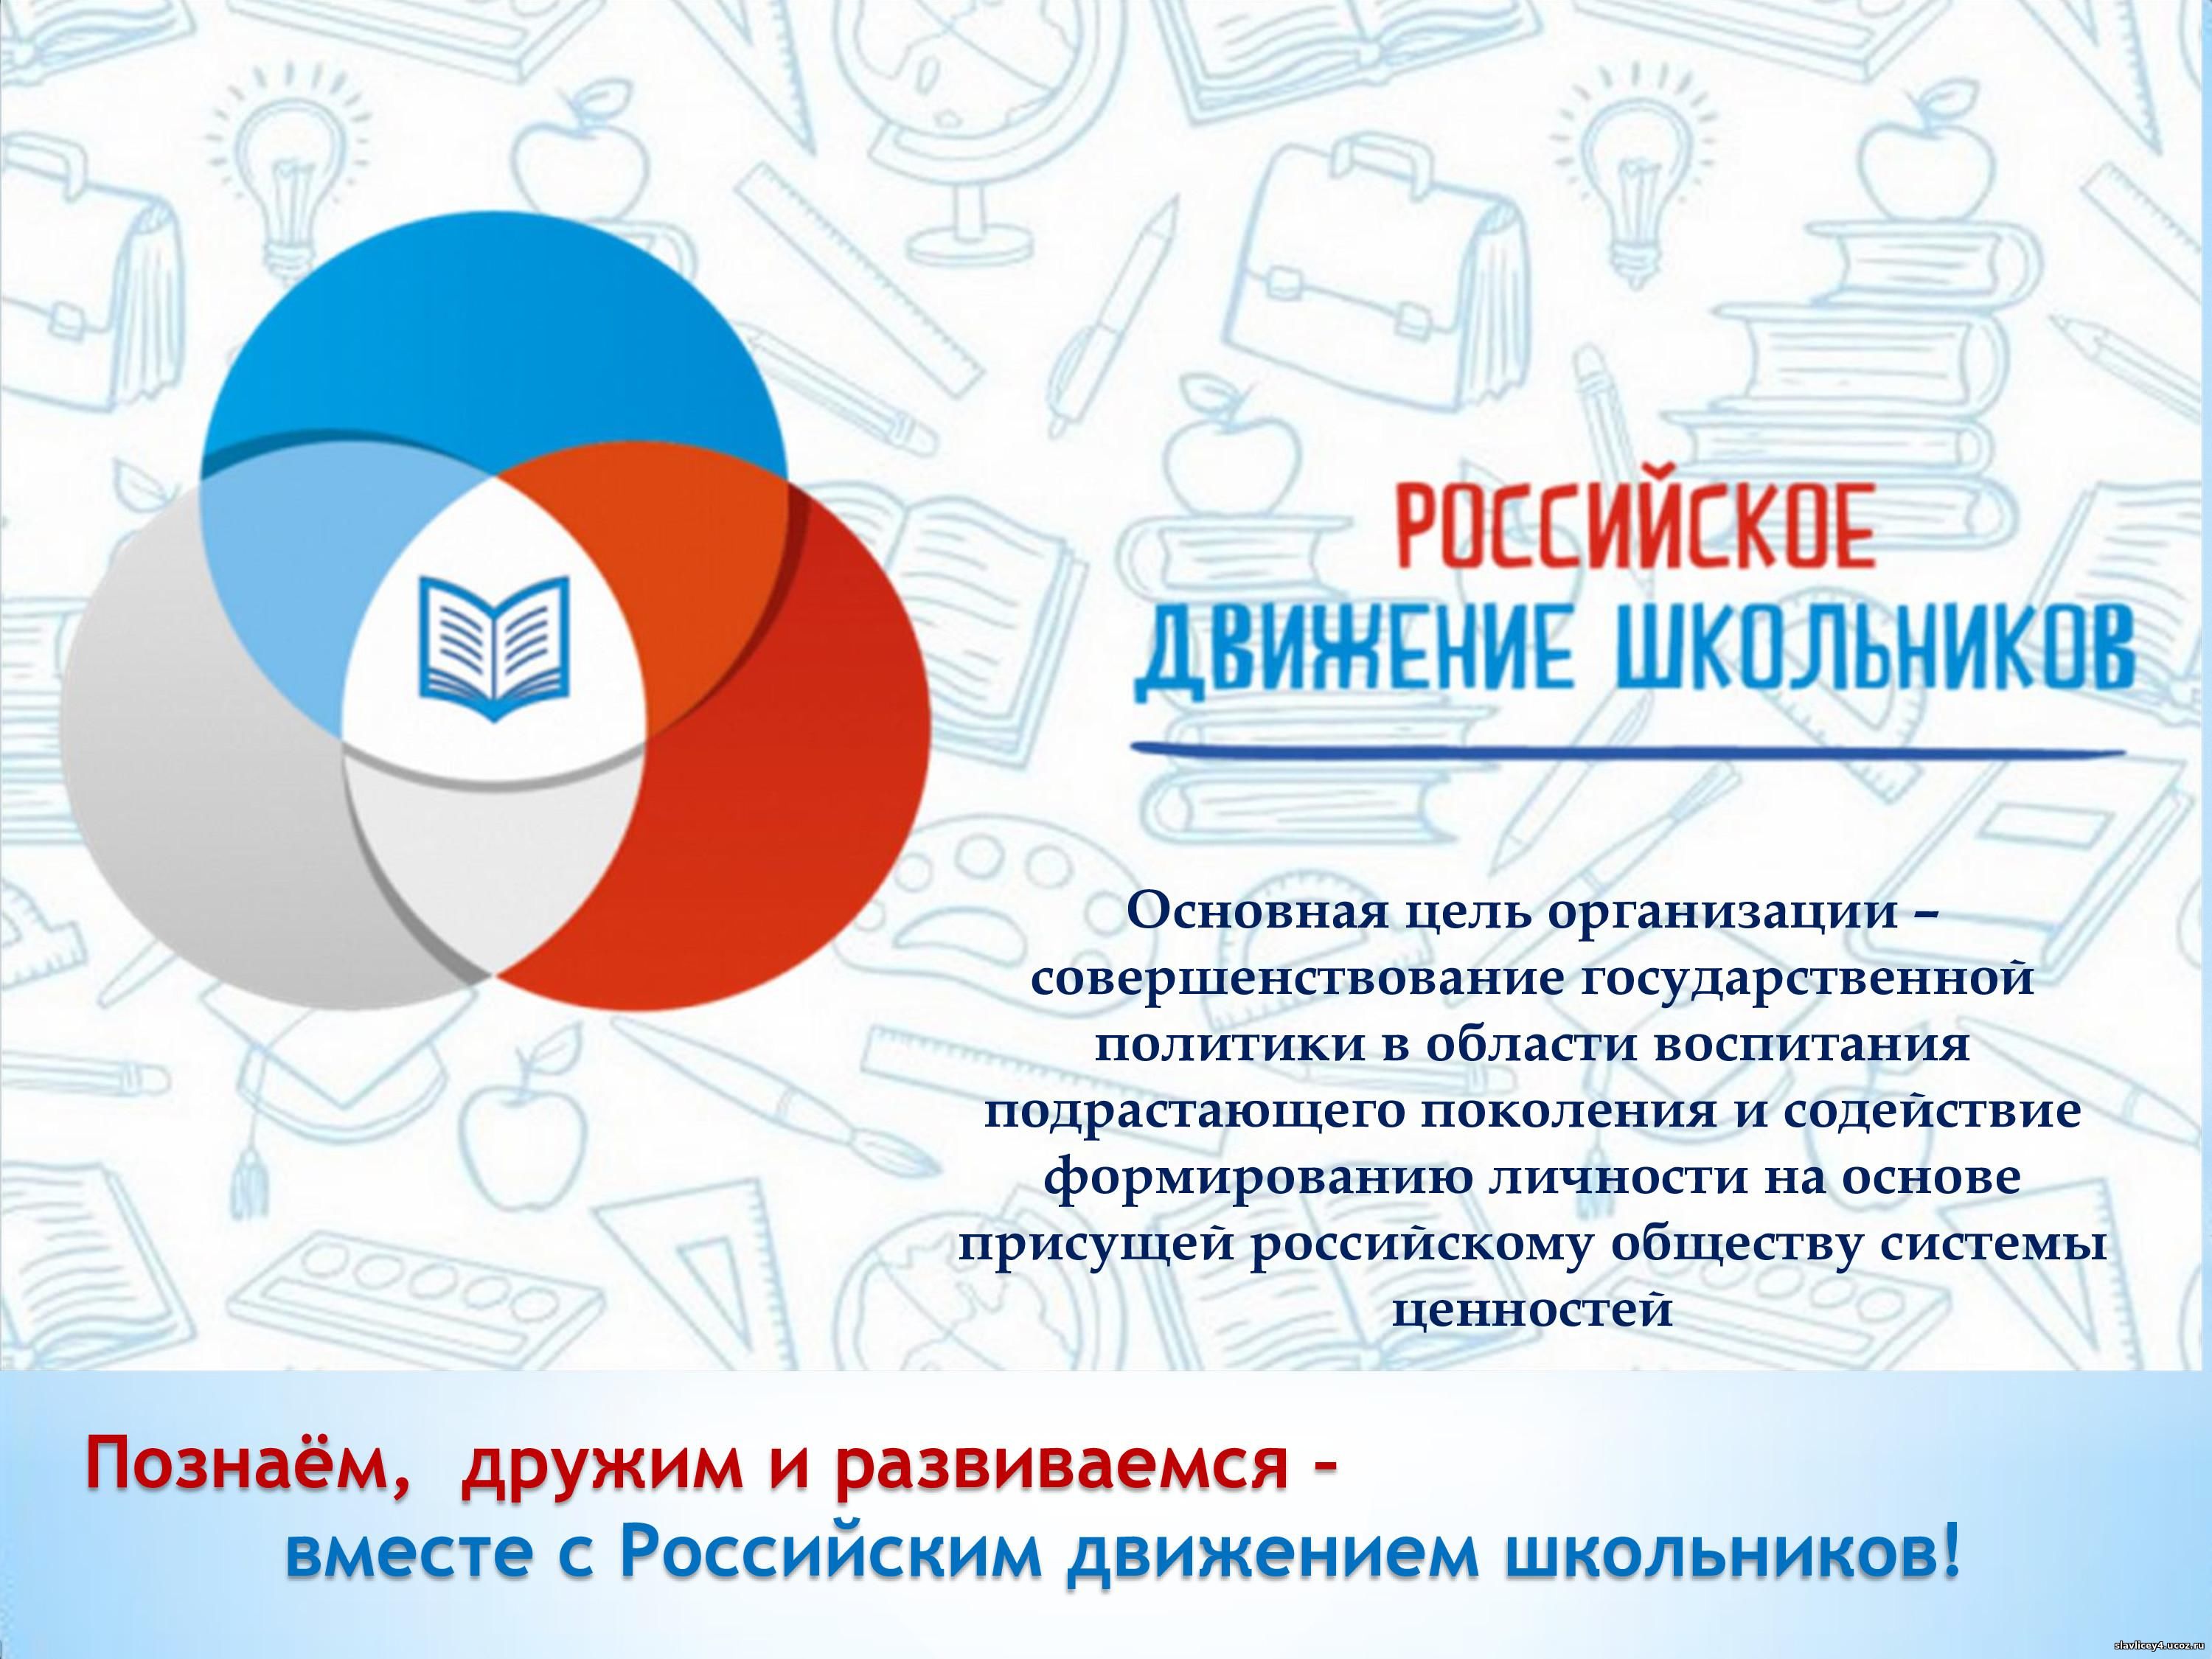 Изображение: Познаём, дружим и развиваемся - вместе с Российским движением школьников!